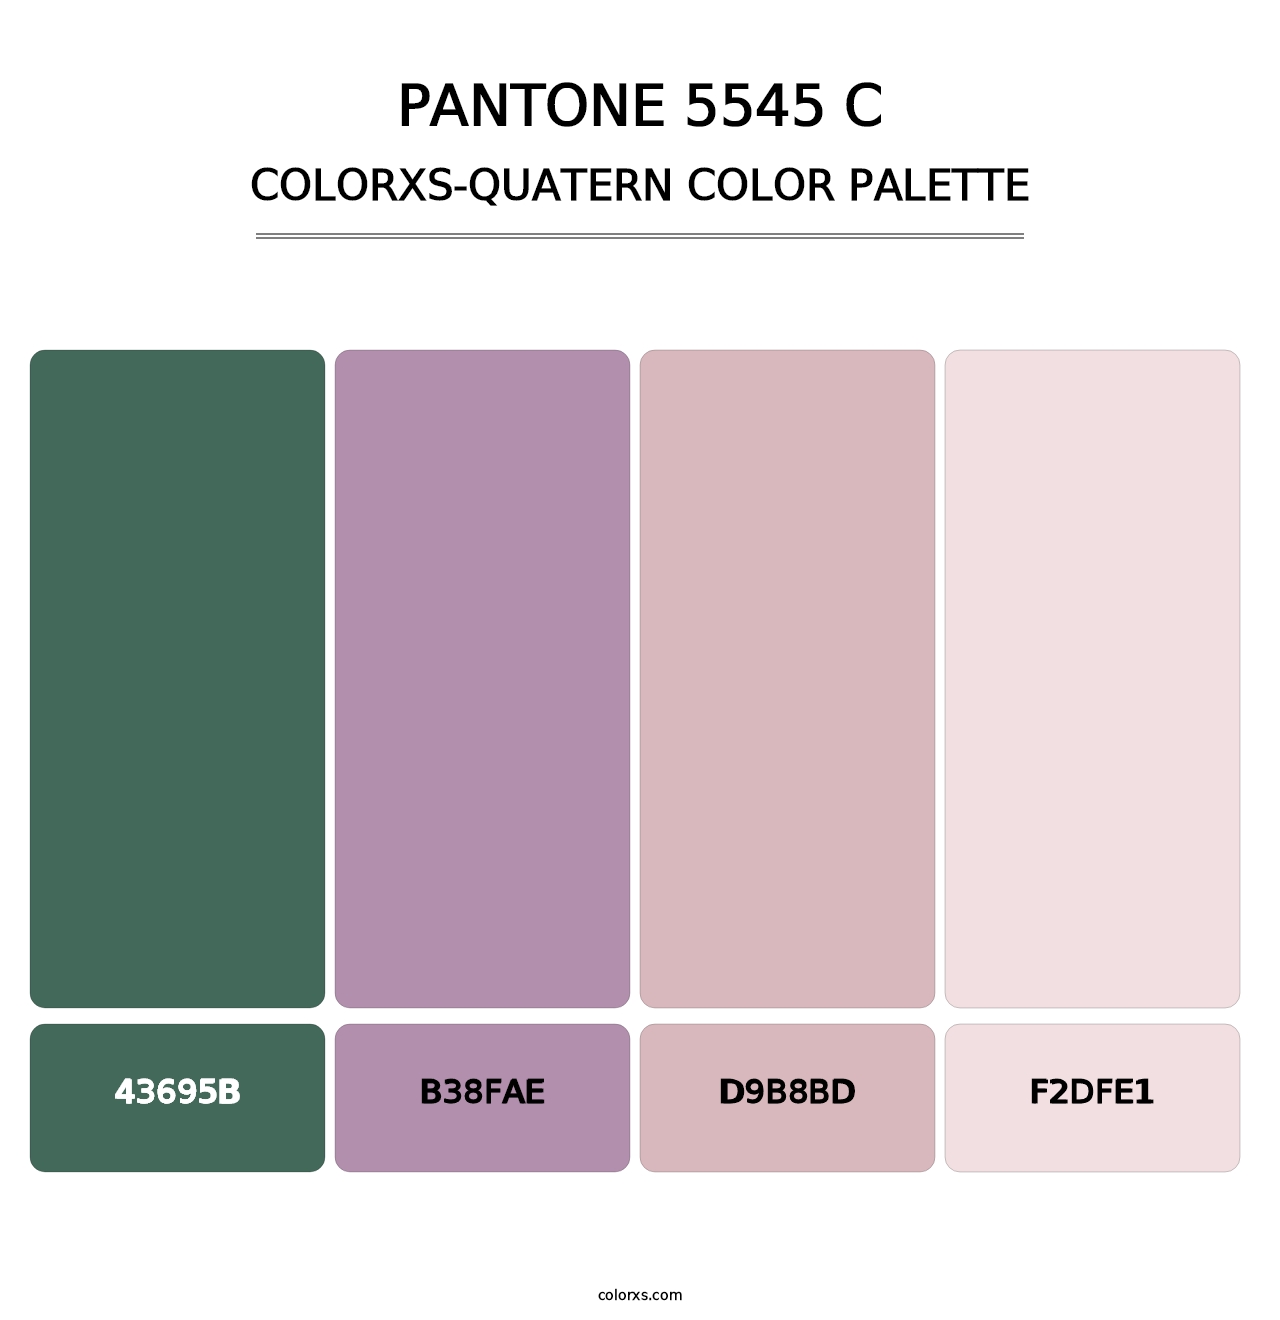 PANTONE 5545 C - Colorxs Quatern Palette